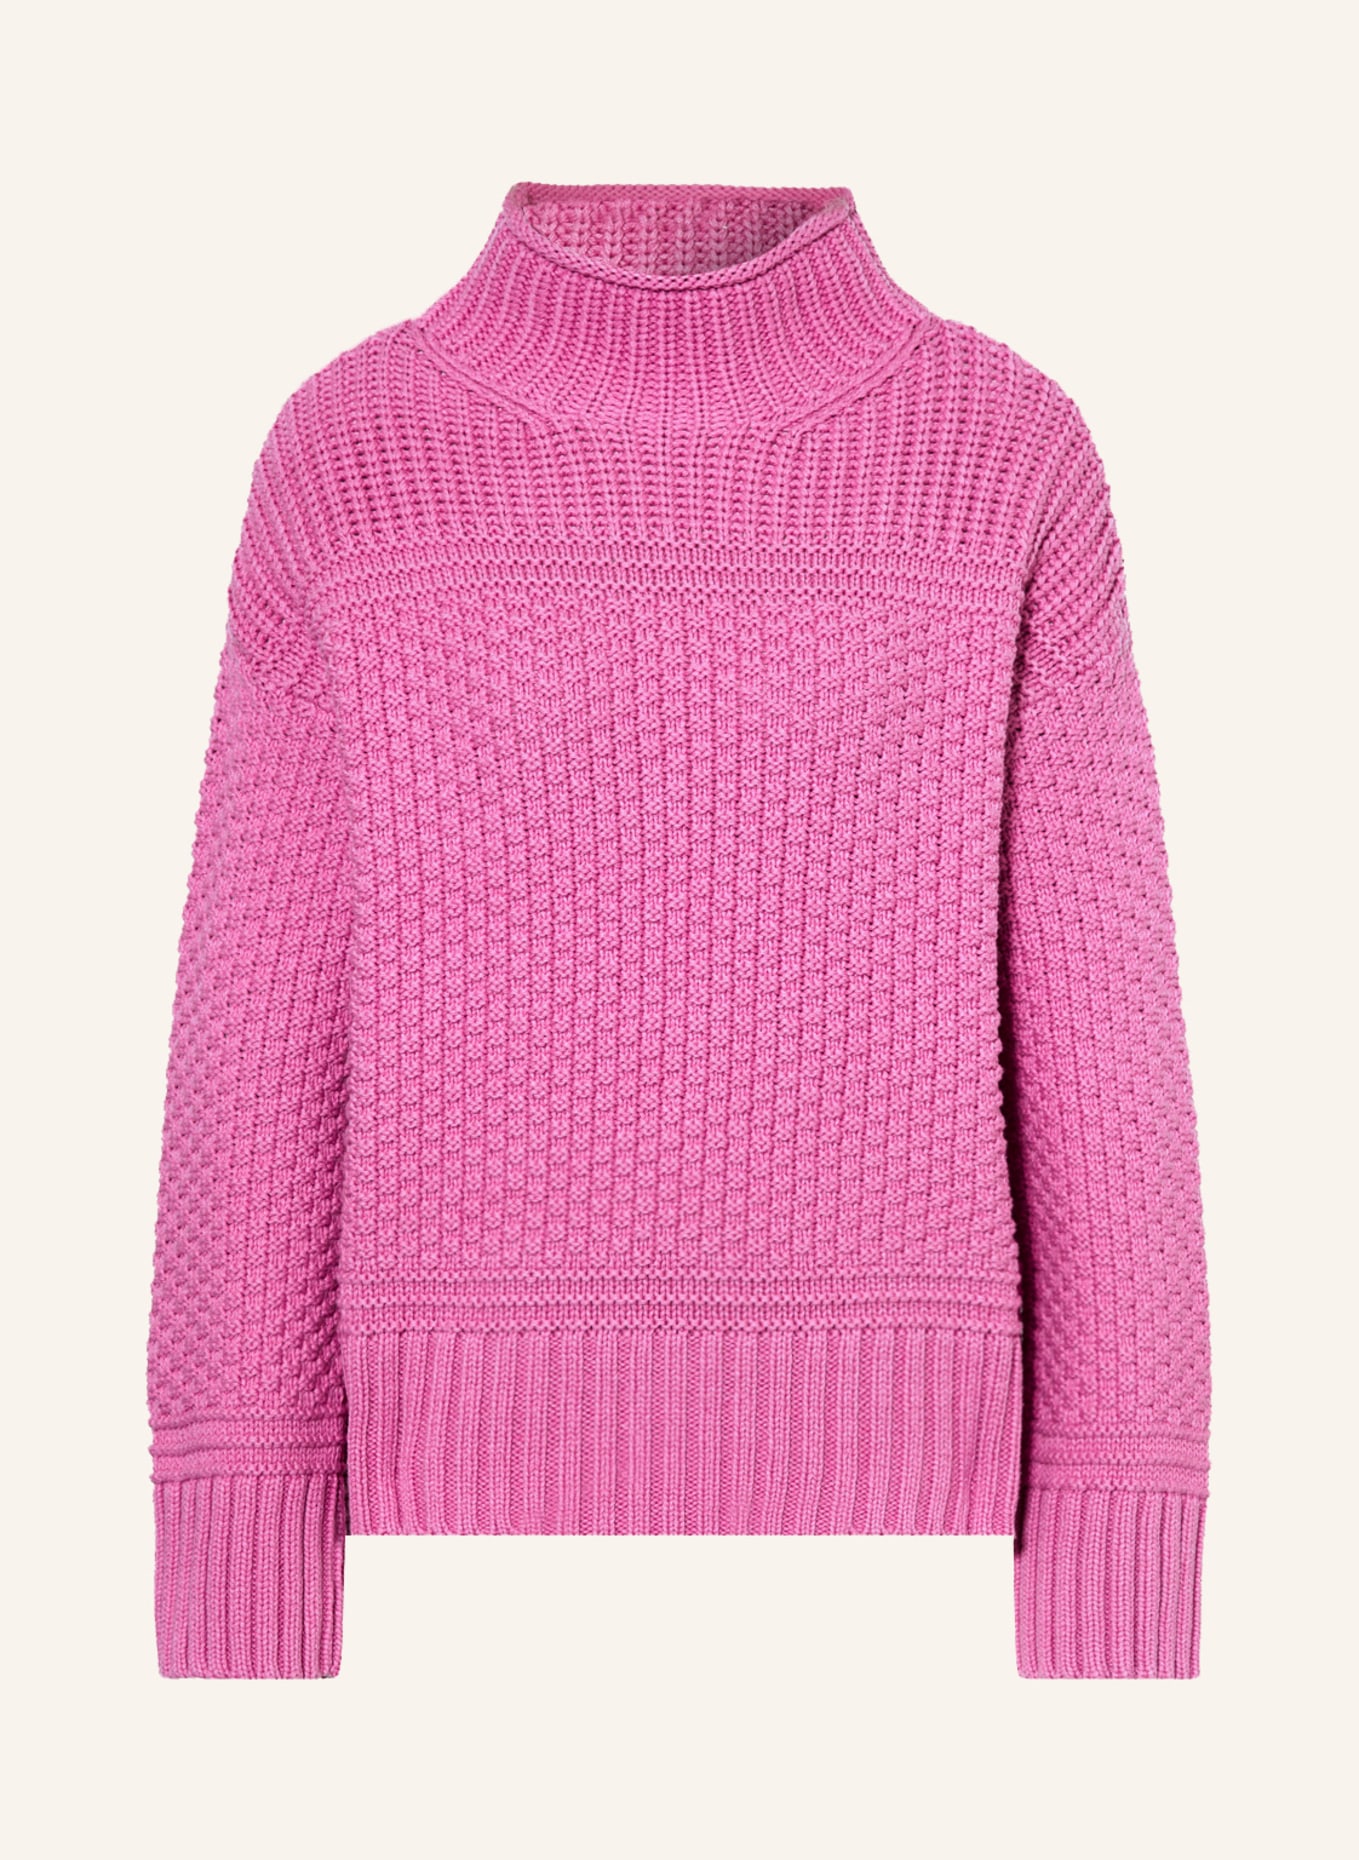 monari Sweater, Color: PINK (Image 1)